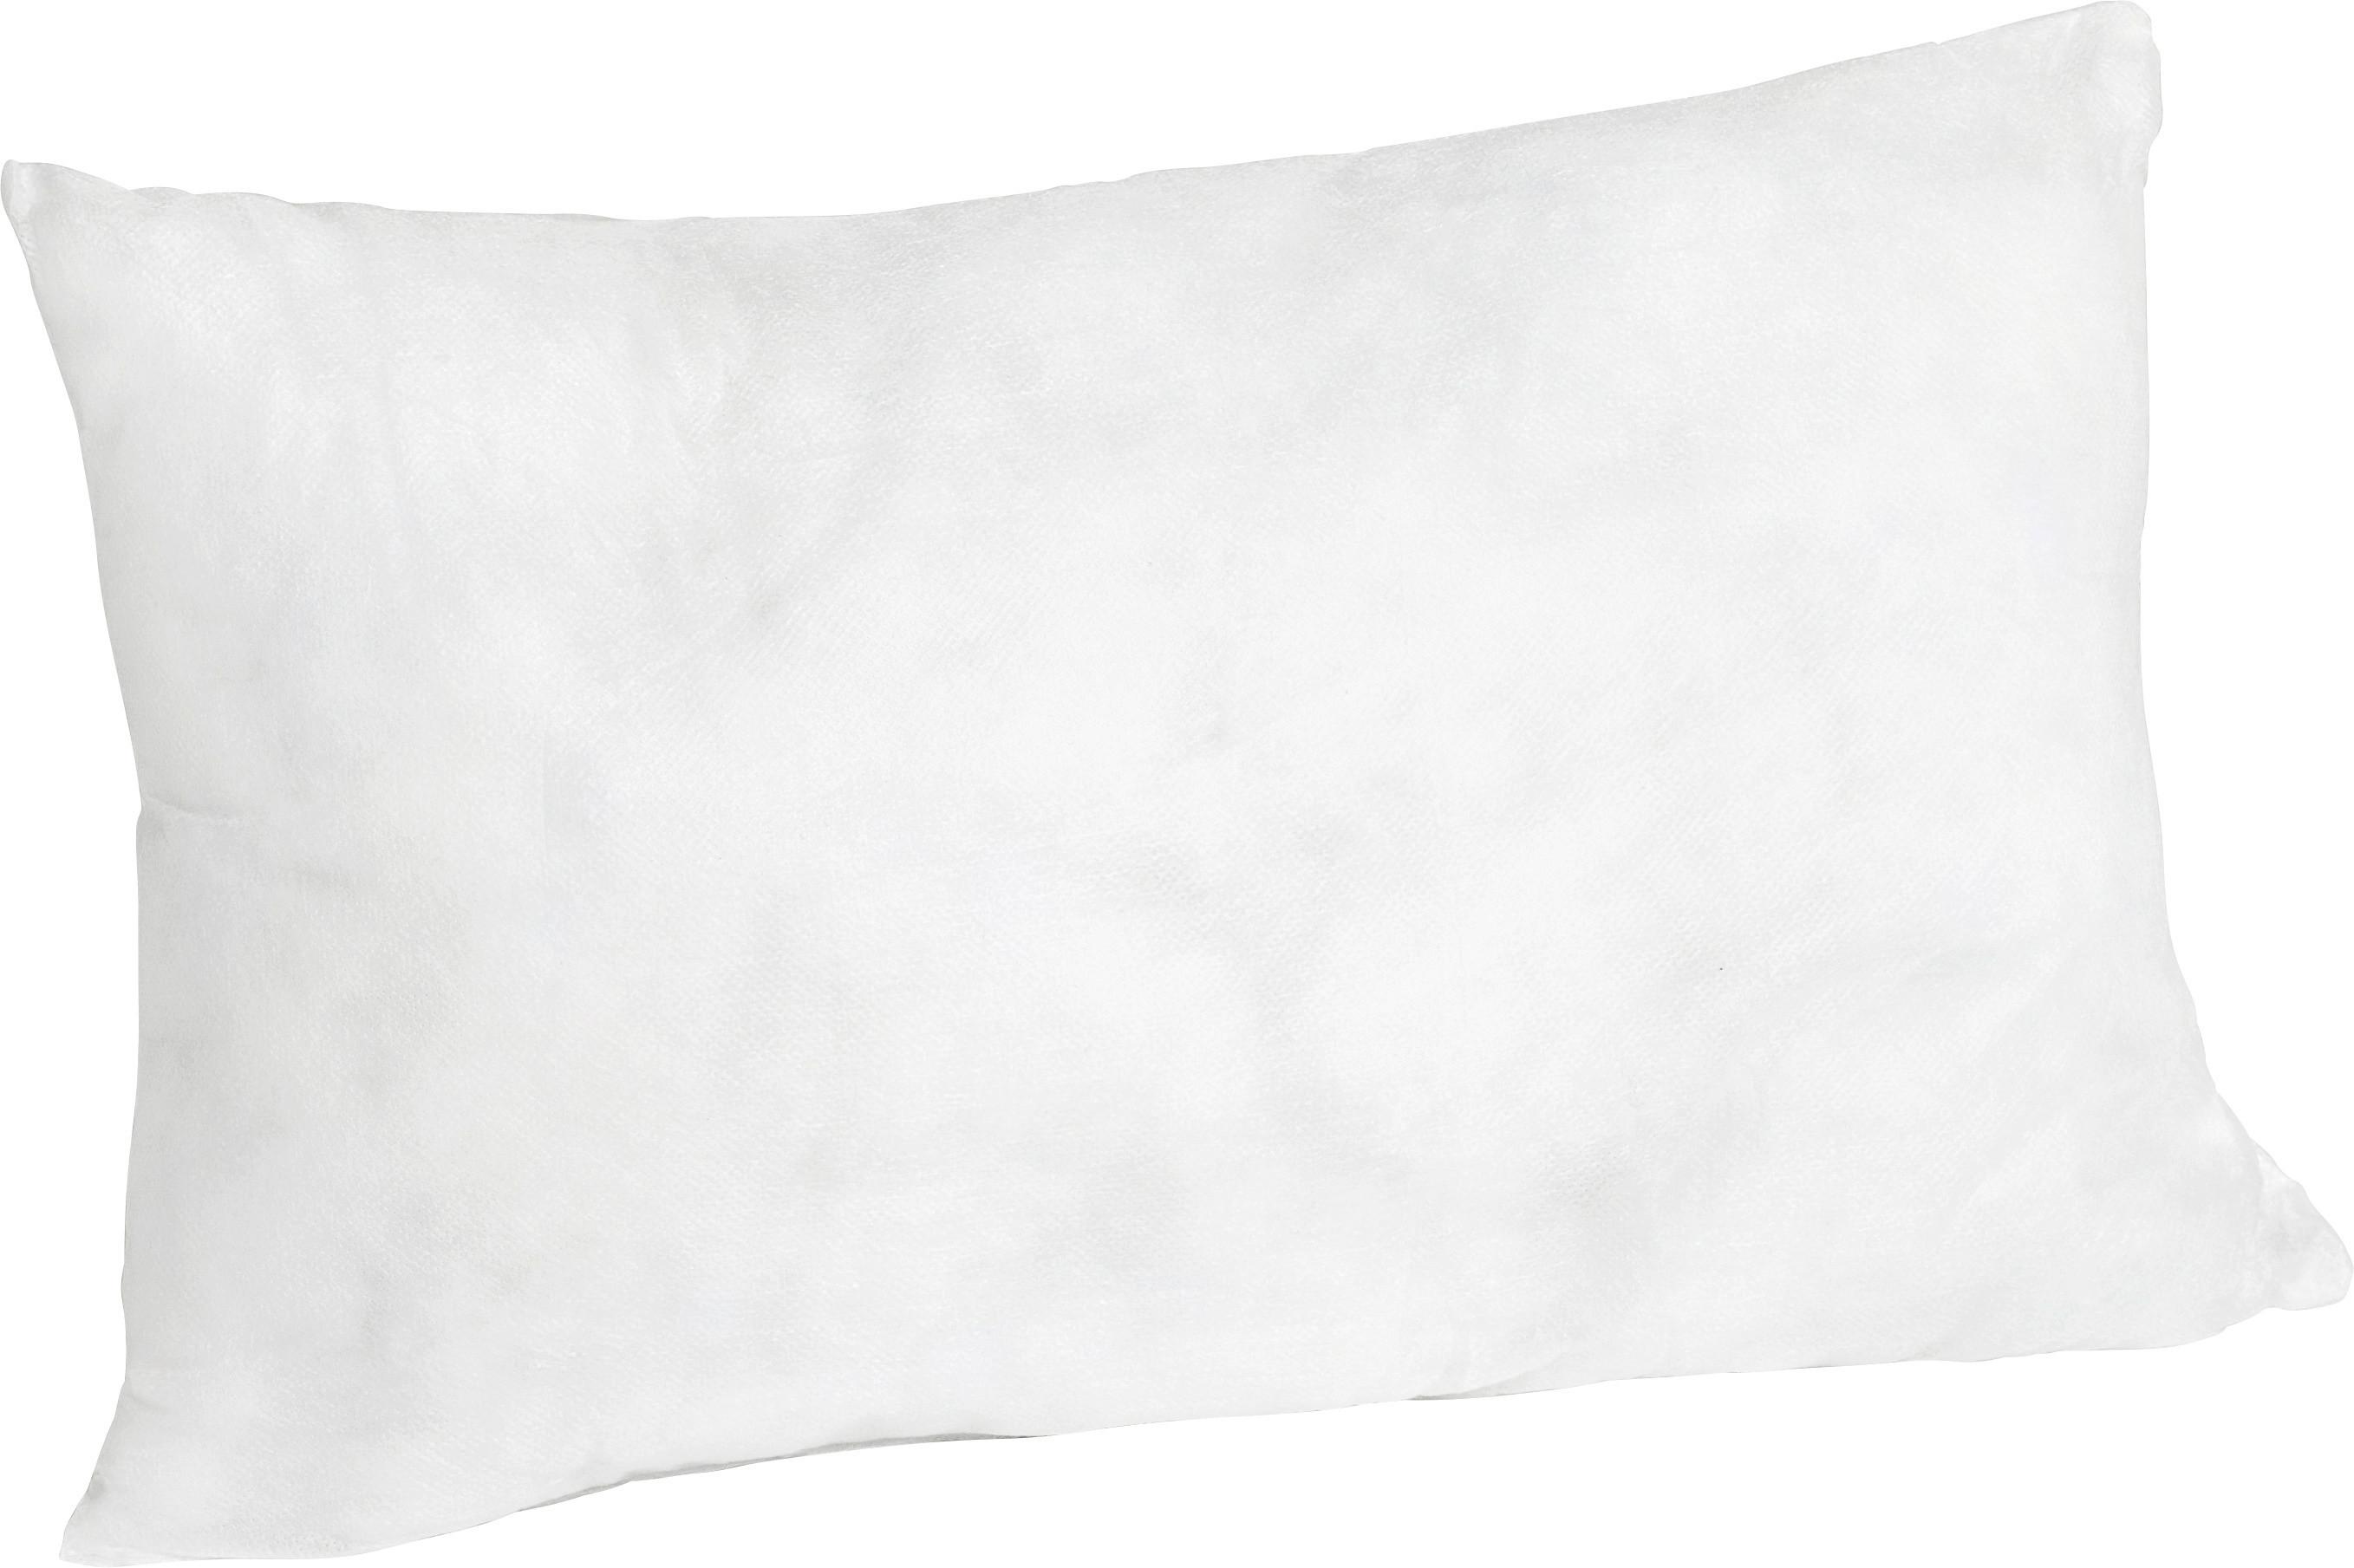 Füllkissen Pia in Weiß ca. 25x45cm - Weiß, Textil (25/45cm) - Nadana